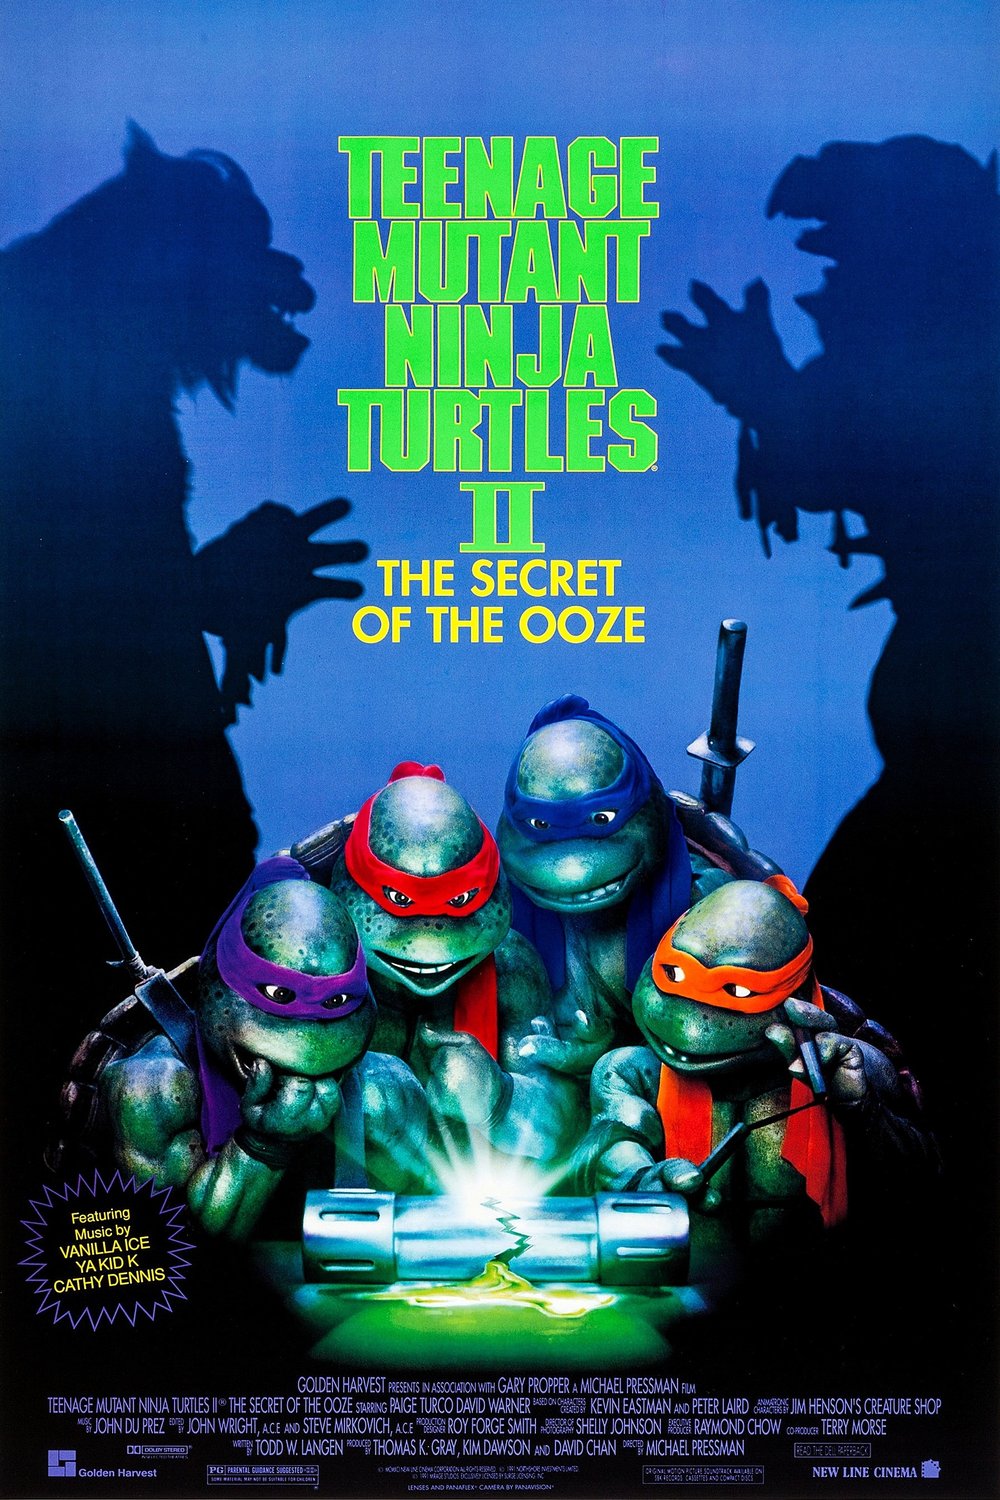 Poster of the movie Teenage Mutant Ninja Turtles II: The Secret of the Ooze